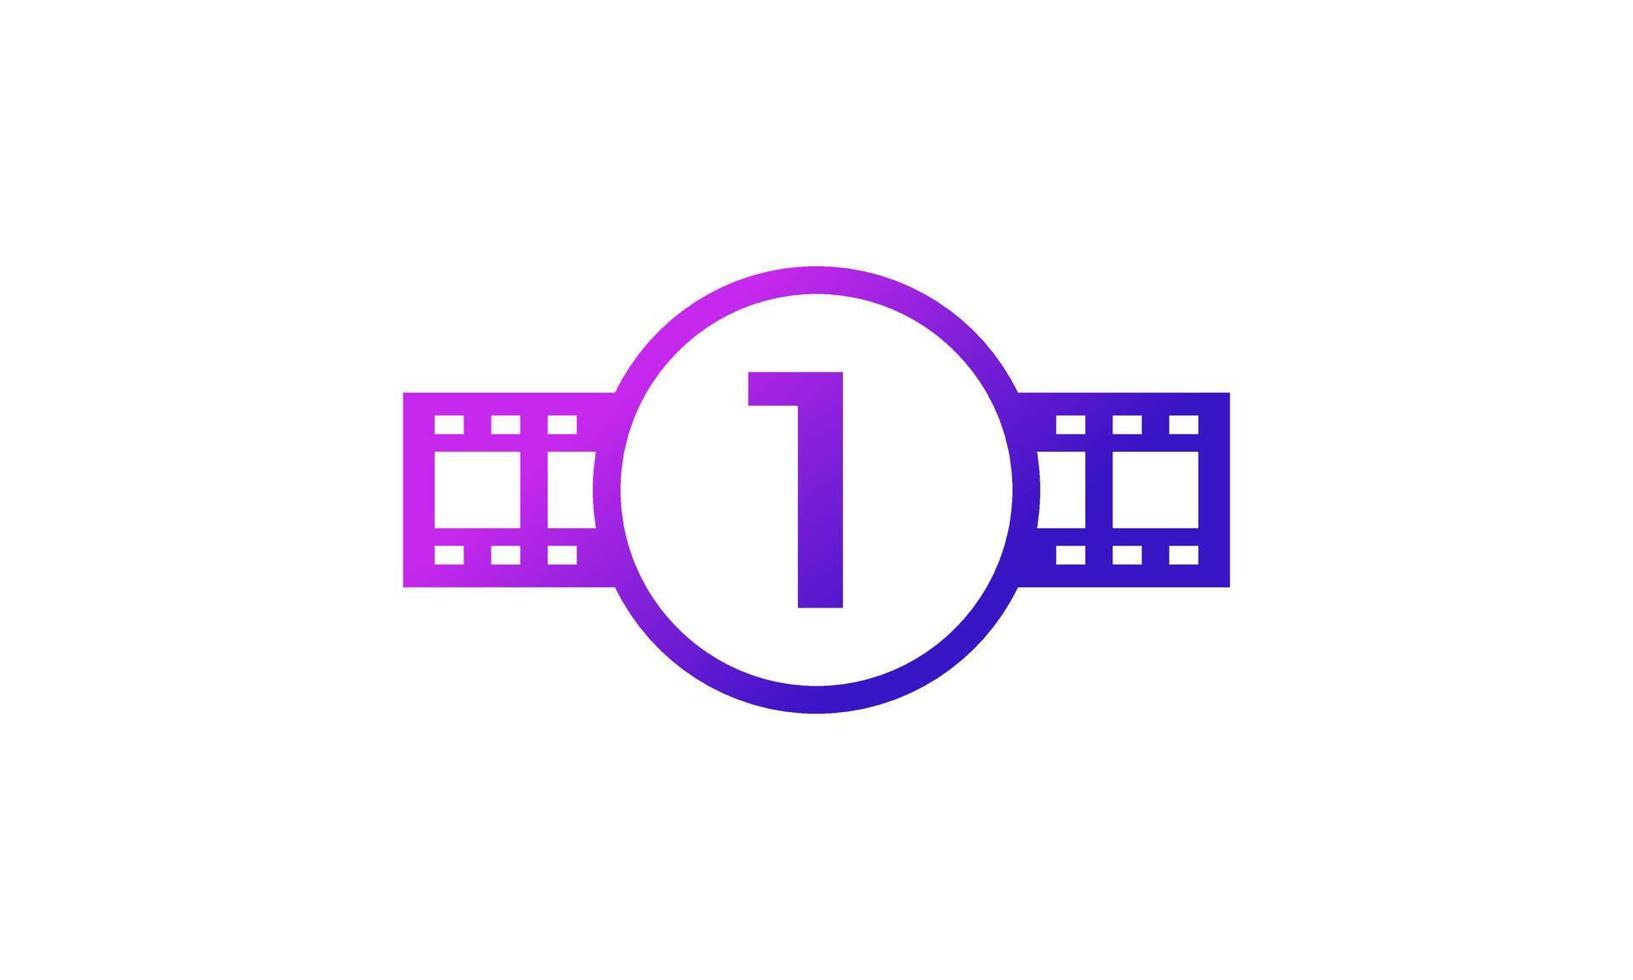 círculo número 1 con rayas de carrete tira de película para película estudio de producción de cine inspiración de logotipo vector